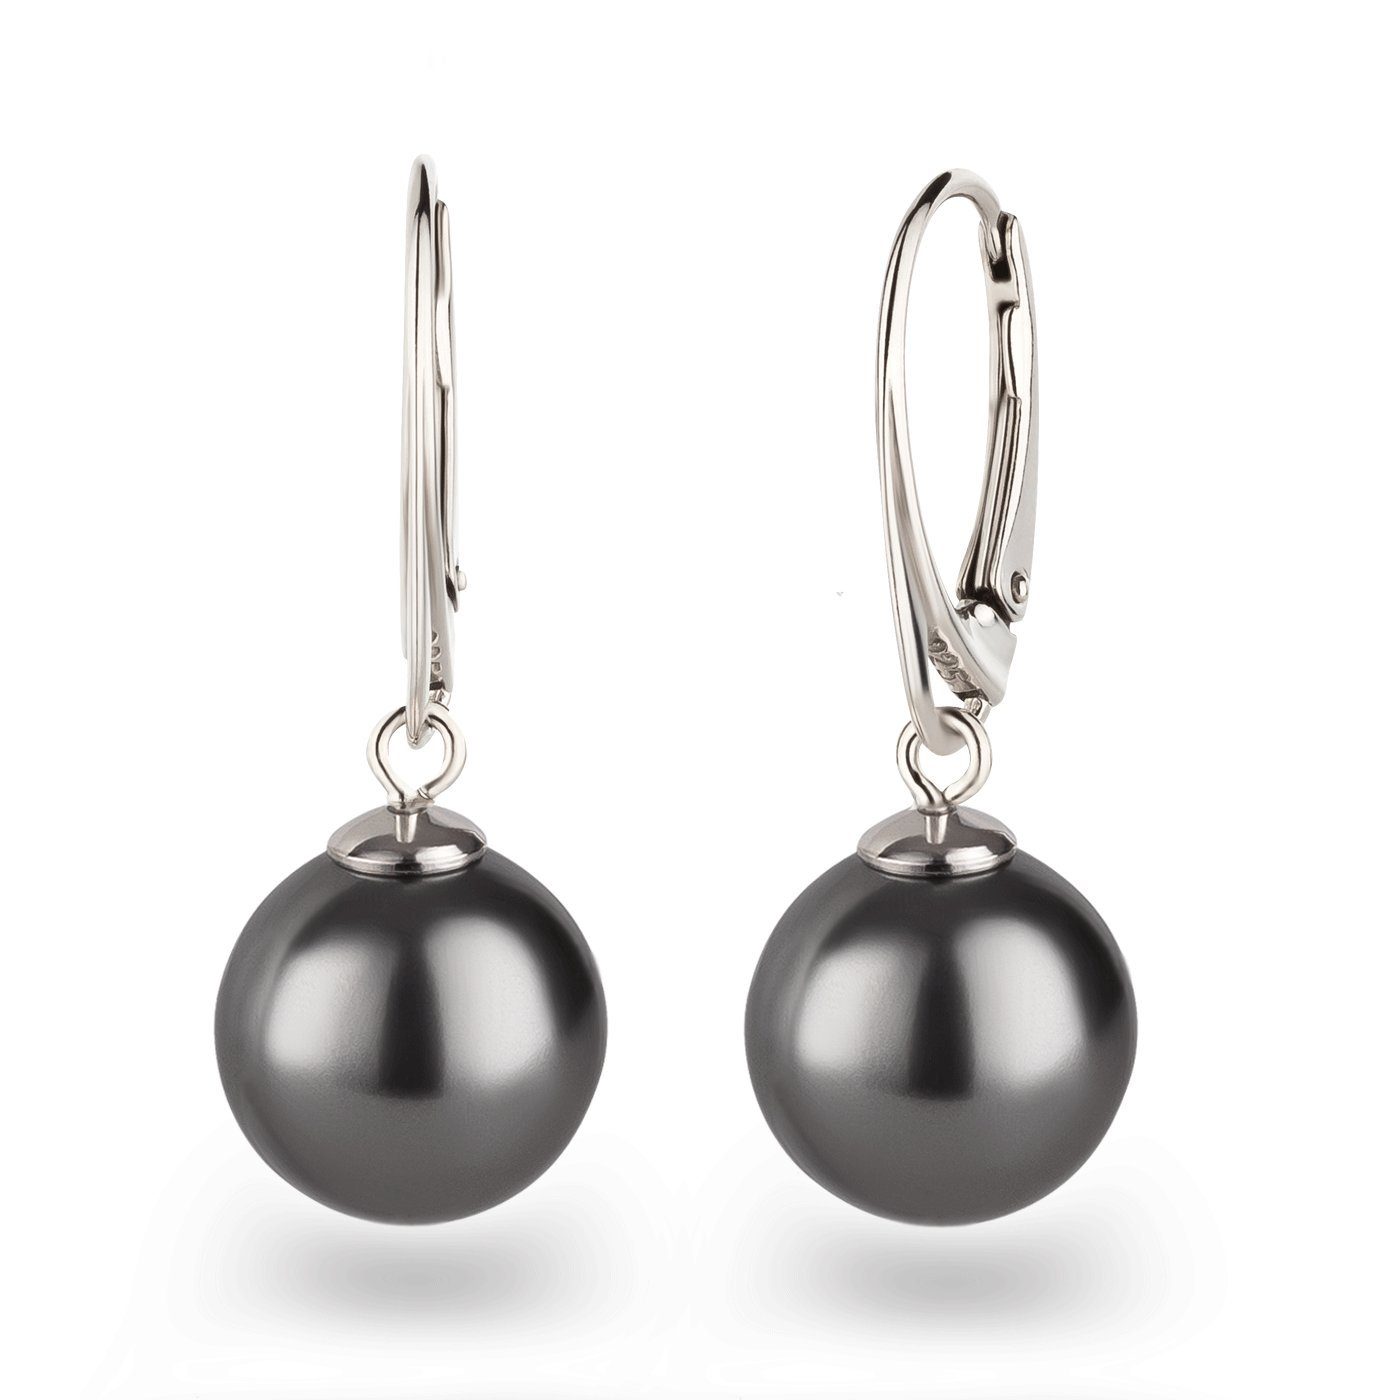 Schöner-SD Paar Ohrhänger mit Perle 12mm groß Perlenohrringe hängend, 925 Sterling Silber, Hänger